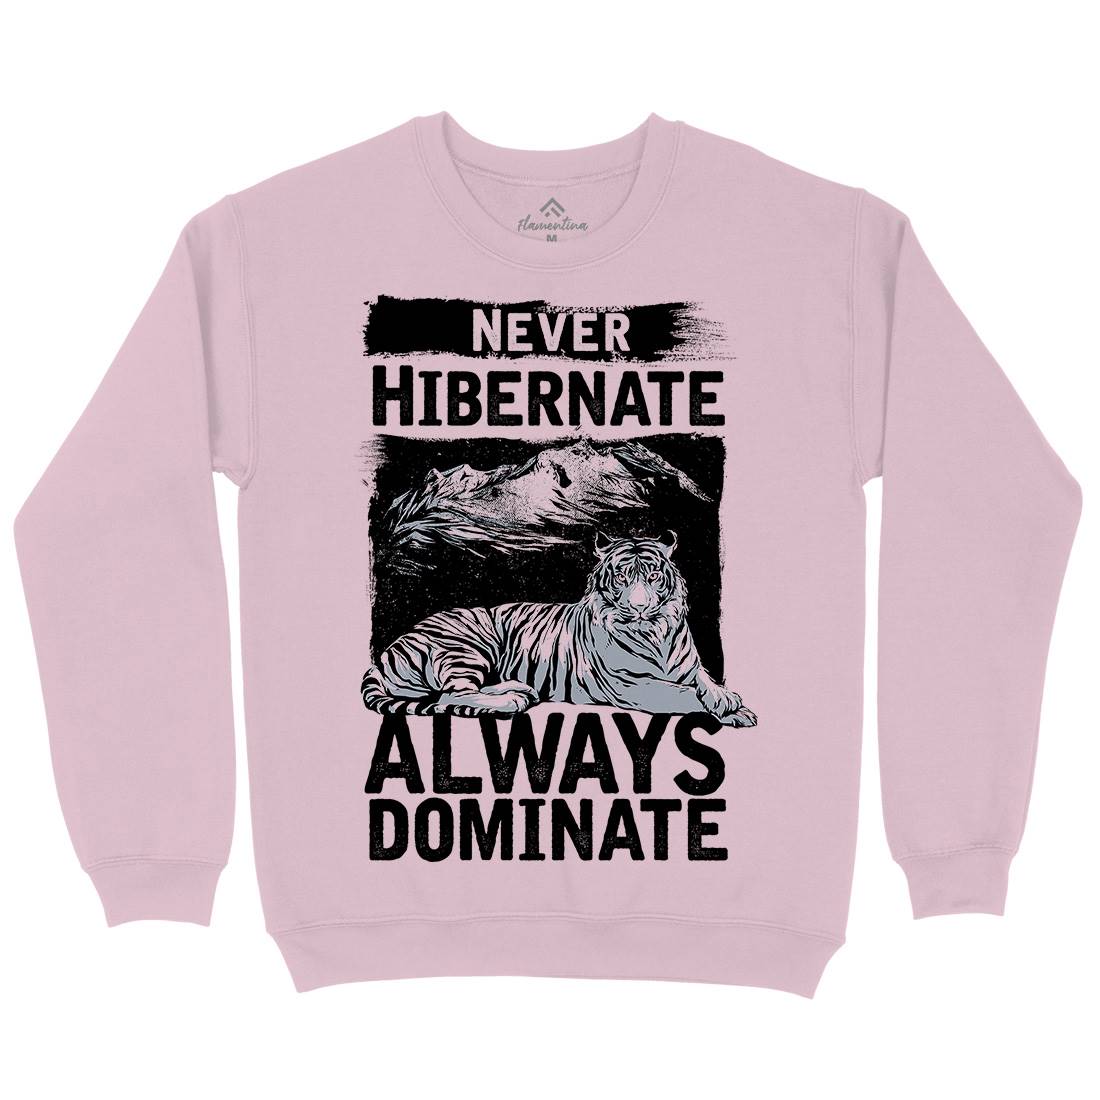 Never Hibernate Kids Crew Neck Sweatshirt Nature C968